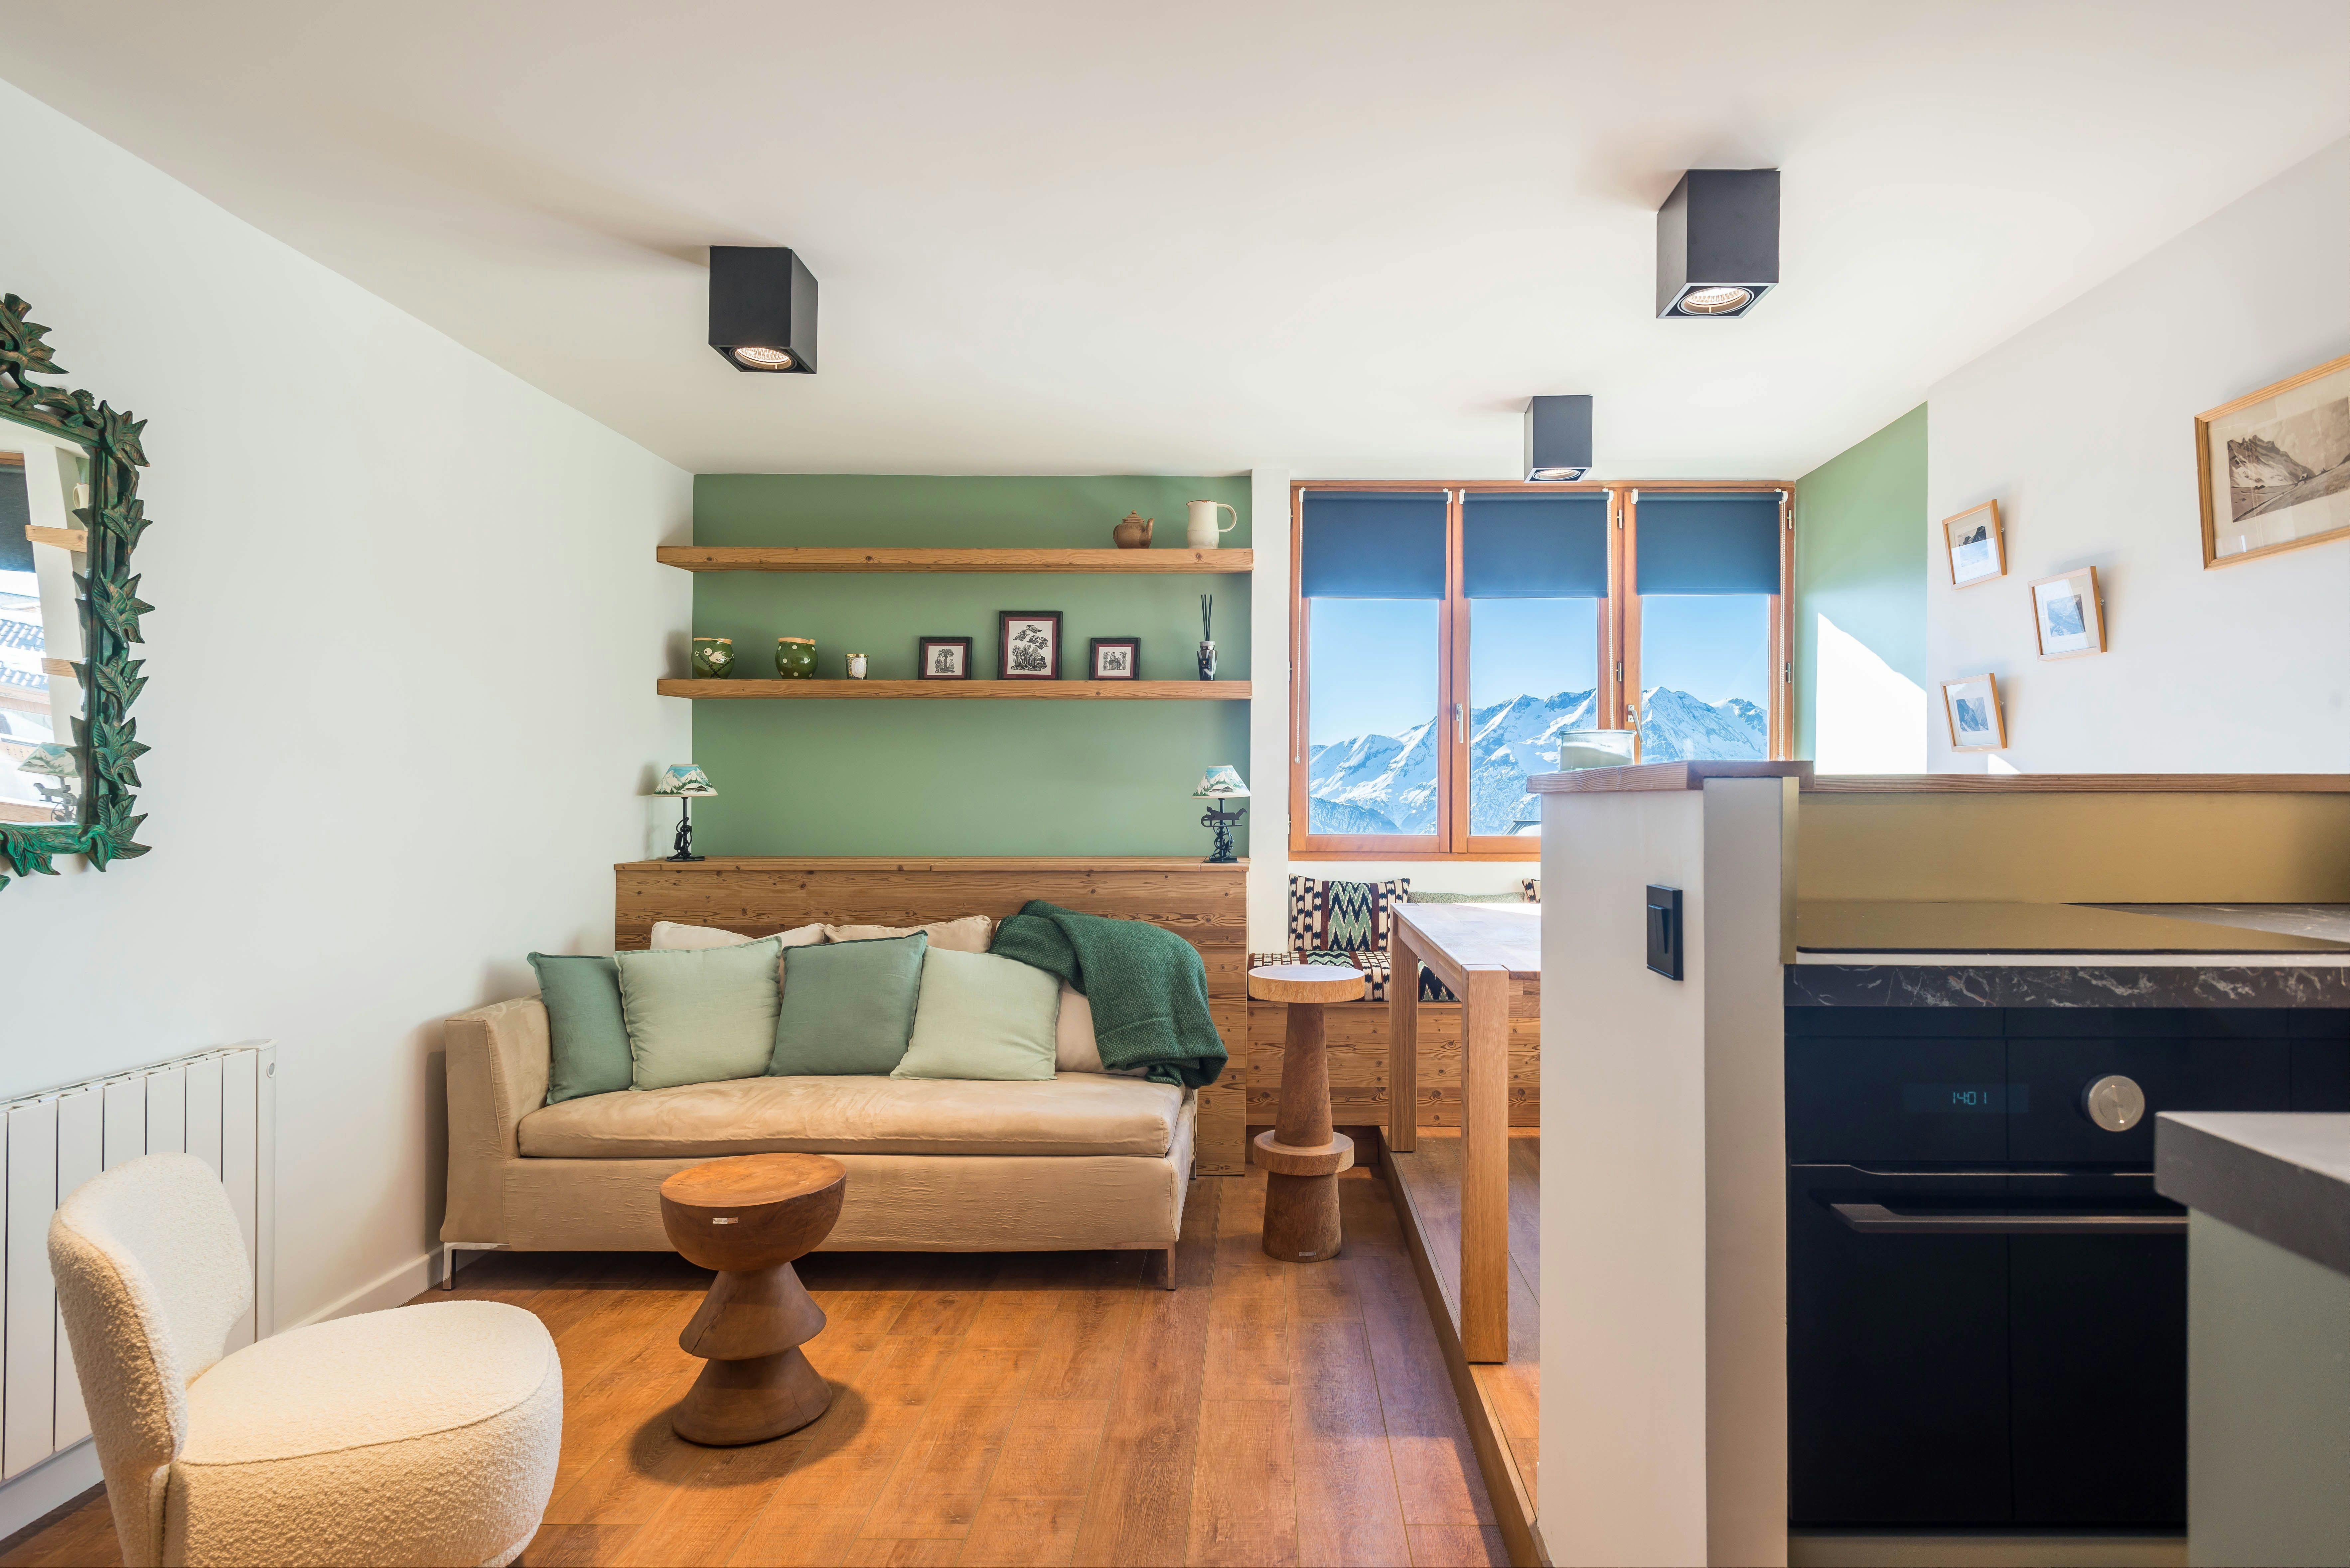 Rénovation appartement dans les Alpes vue pièce de vie par Architéa Grenoble Est